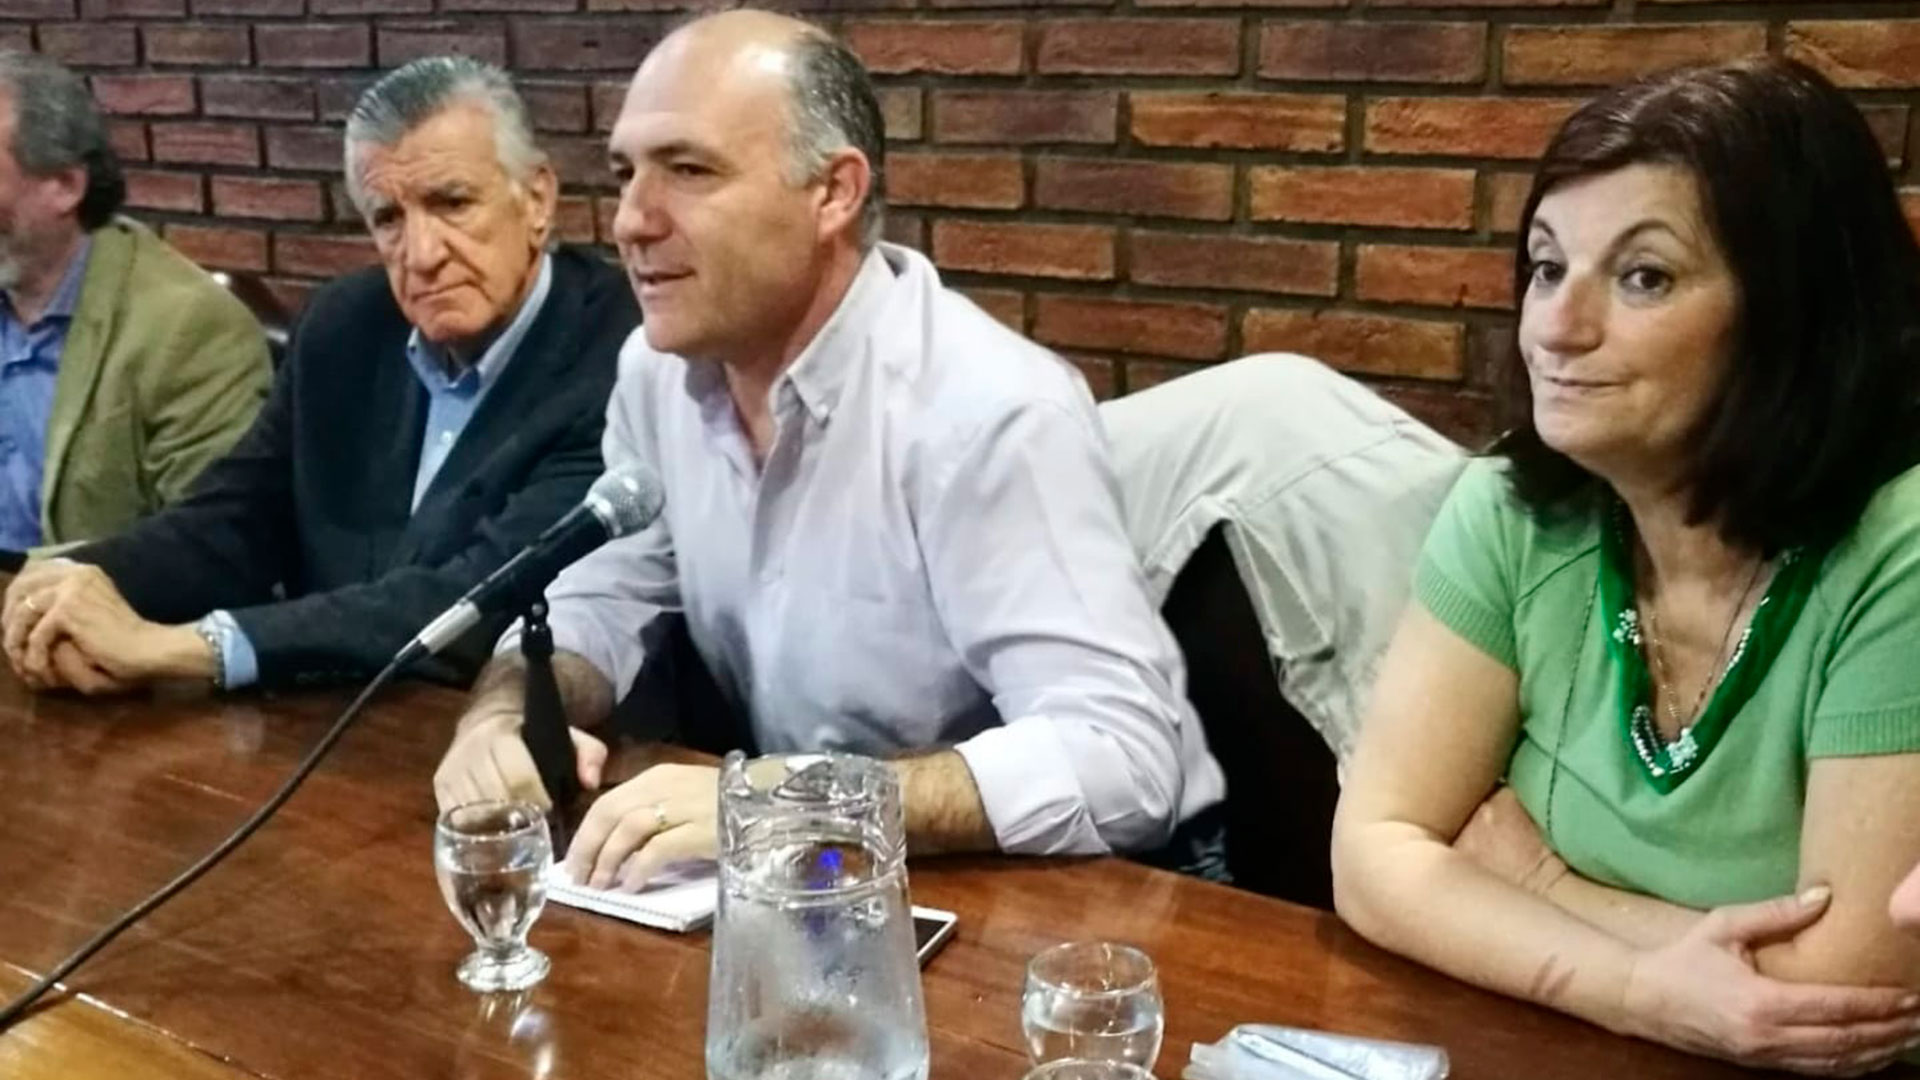 Kelly Olmos forma parte de los equipos técnicos del PJ Nacional y militó mucho tiempo con Alberto Fernández en el peronismo porteño